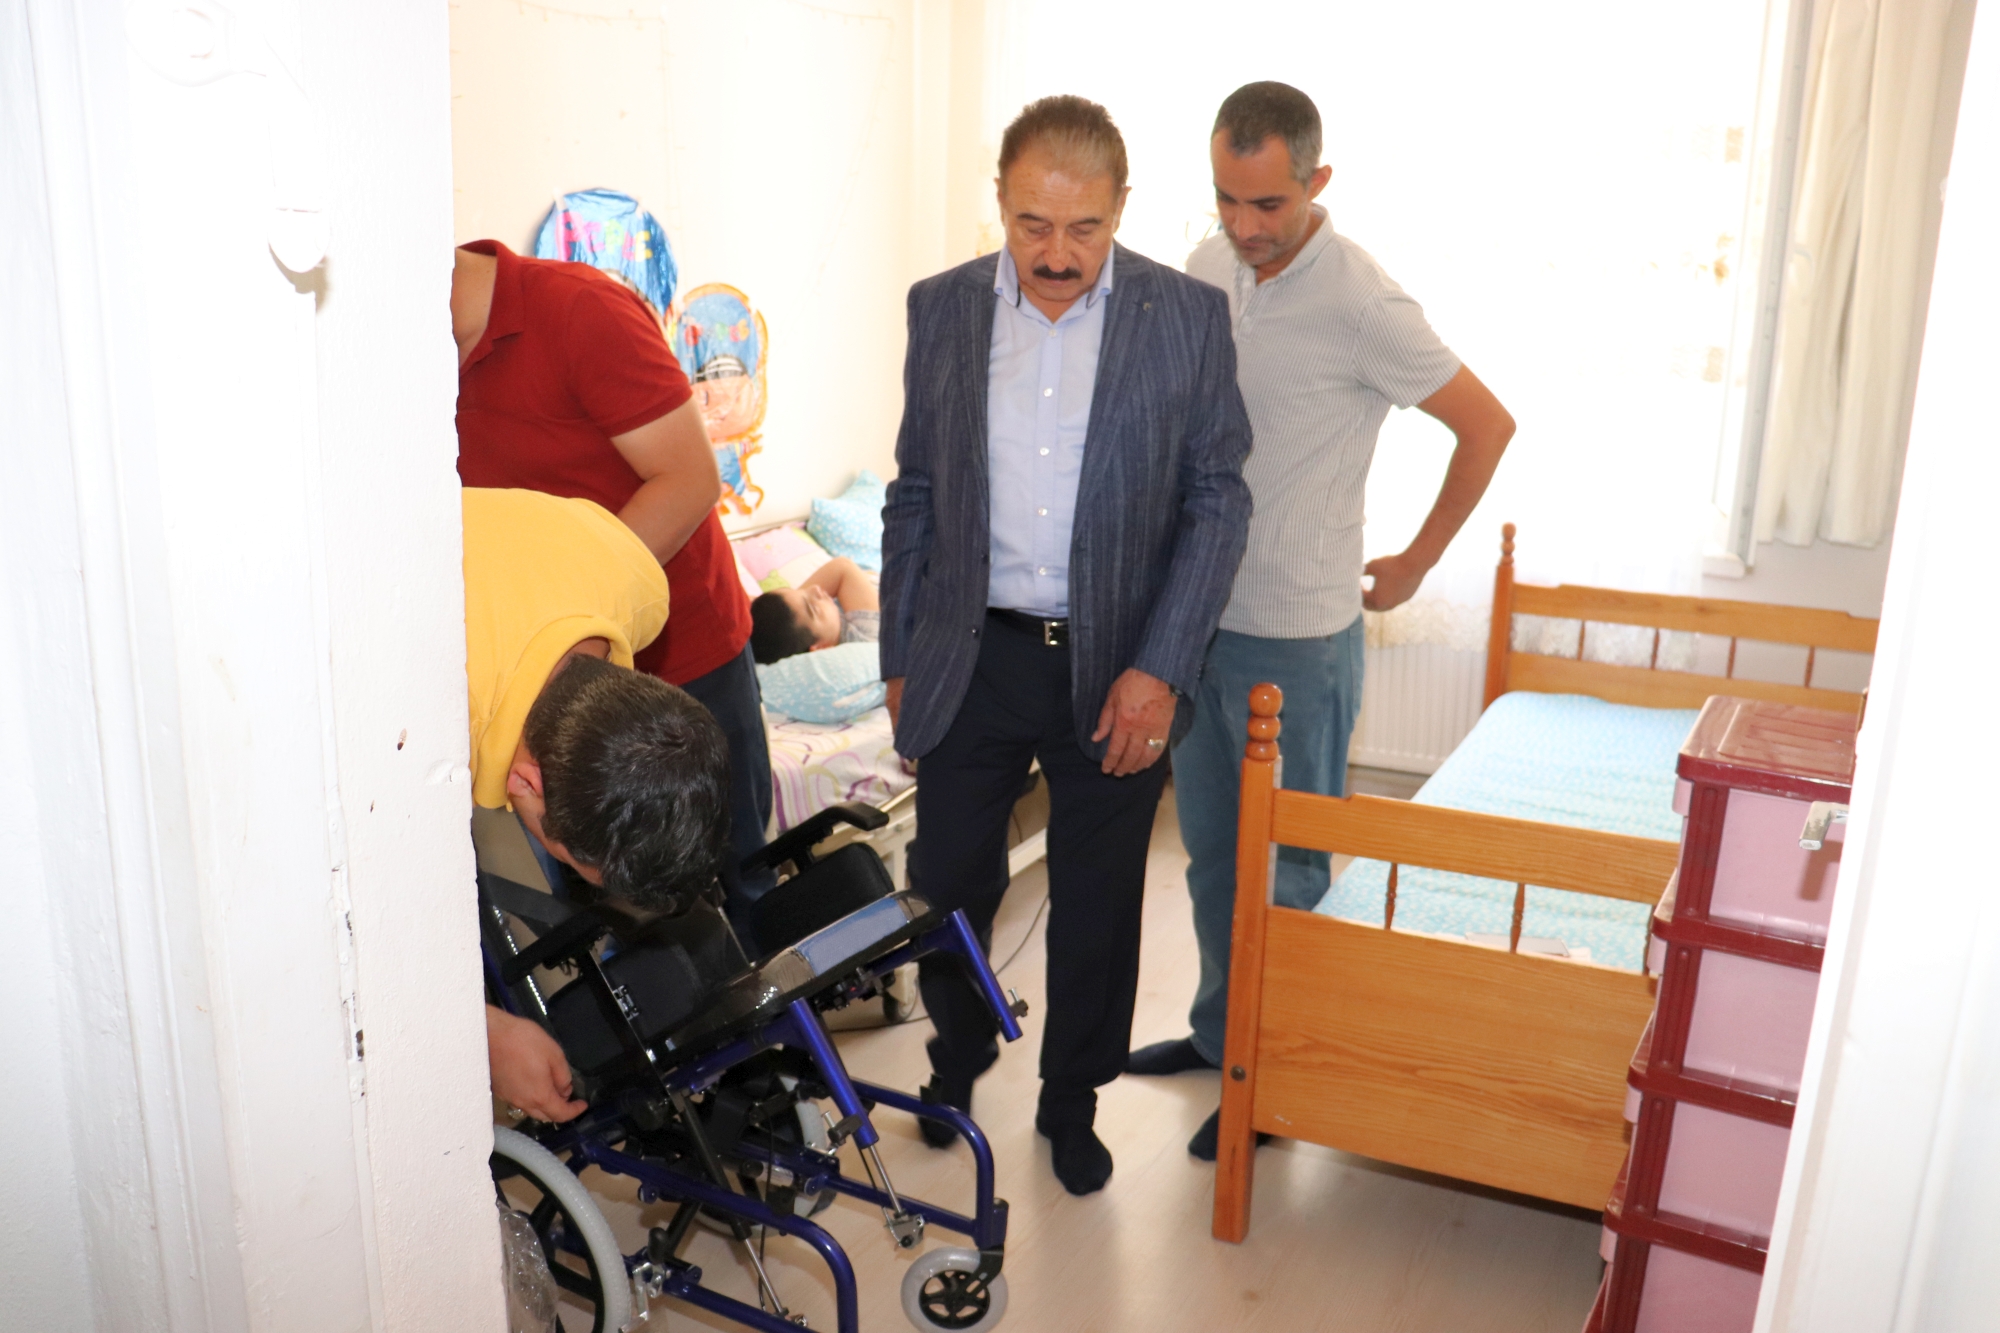 Malatya Esnaf ve Sanatkarlar Odaları Birliği (MESOB) Başkanı Şevket Keskin, mağdur bir vatandaşın 10 yaşındaki evde yatalak olan engelli çocuğu için talep ettiği tekerlekli sandalyenin temin edilmesine aracı olarak, Kurban Bayramı öncesinde küçük çocuğun evine götürerek teslim etti.